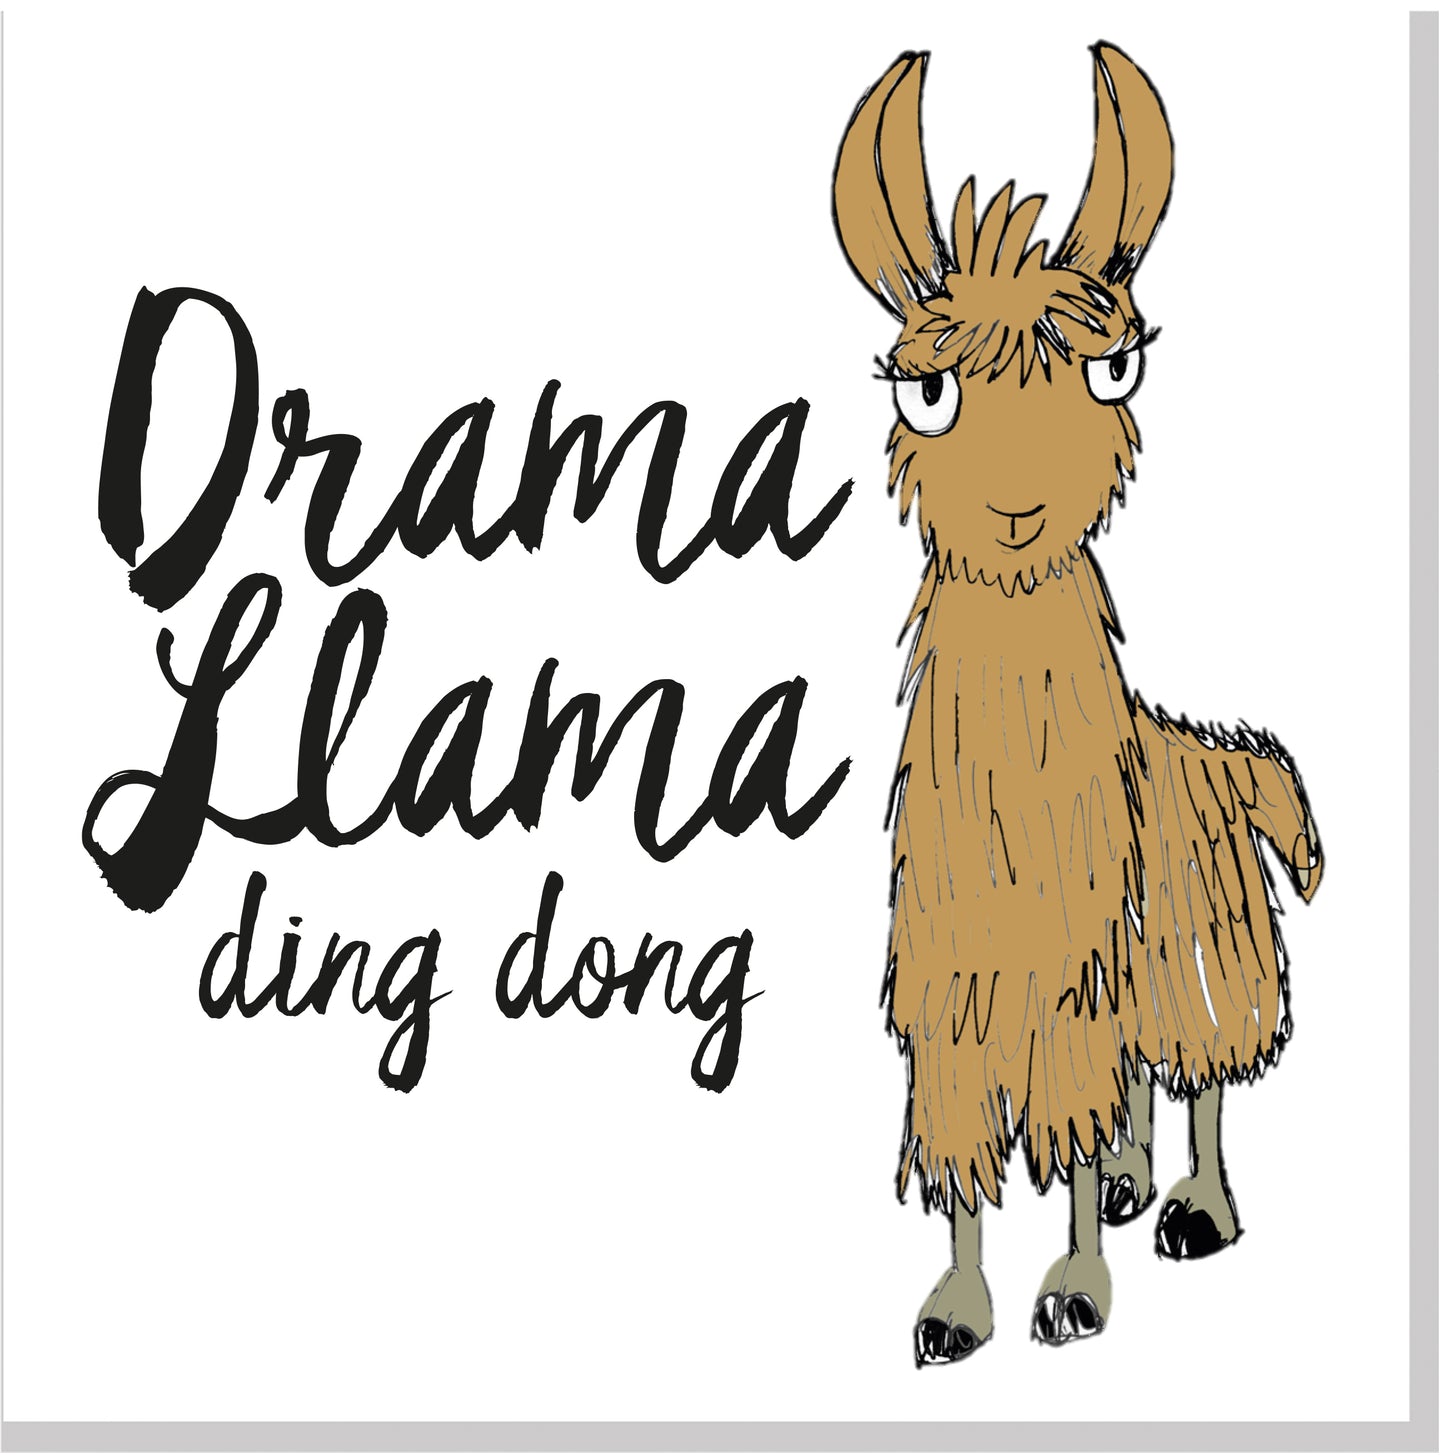 Drama Llama ding dong square card